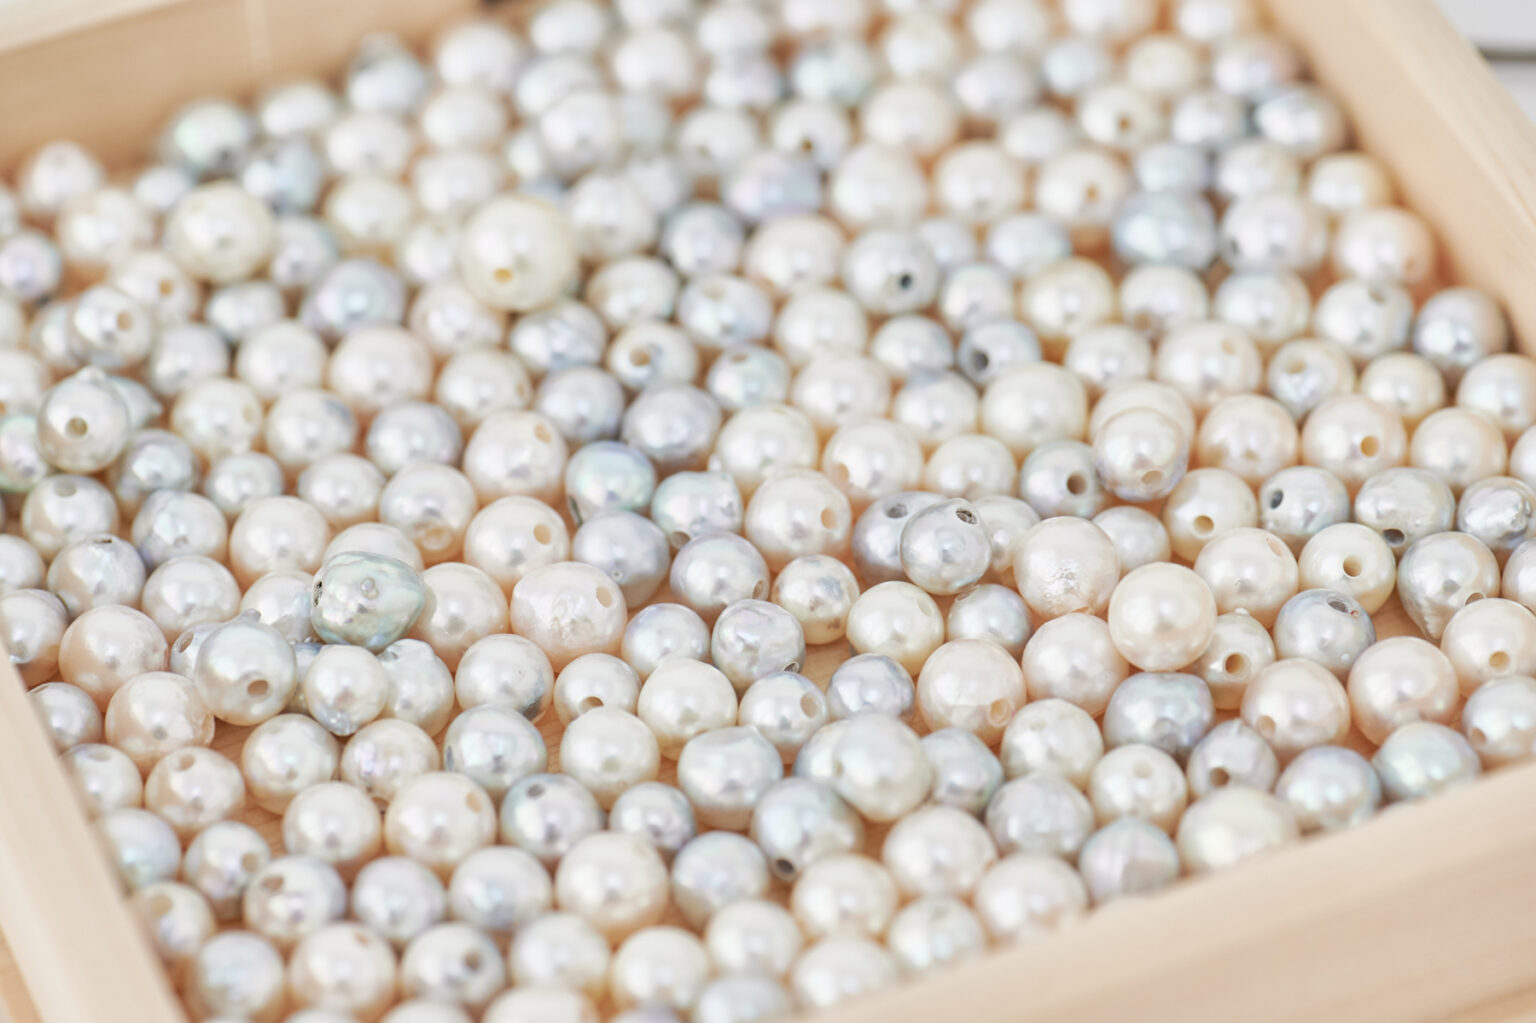 たくさんの真珠の中から、好みのものを2粒選びます。